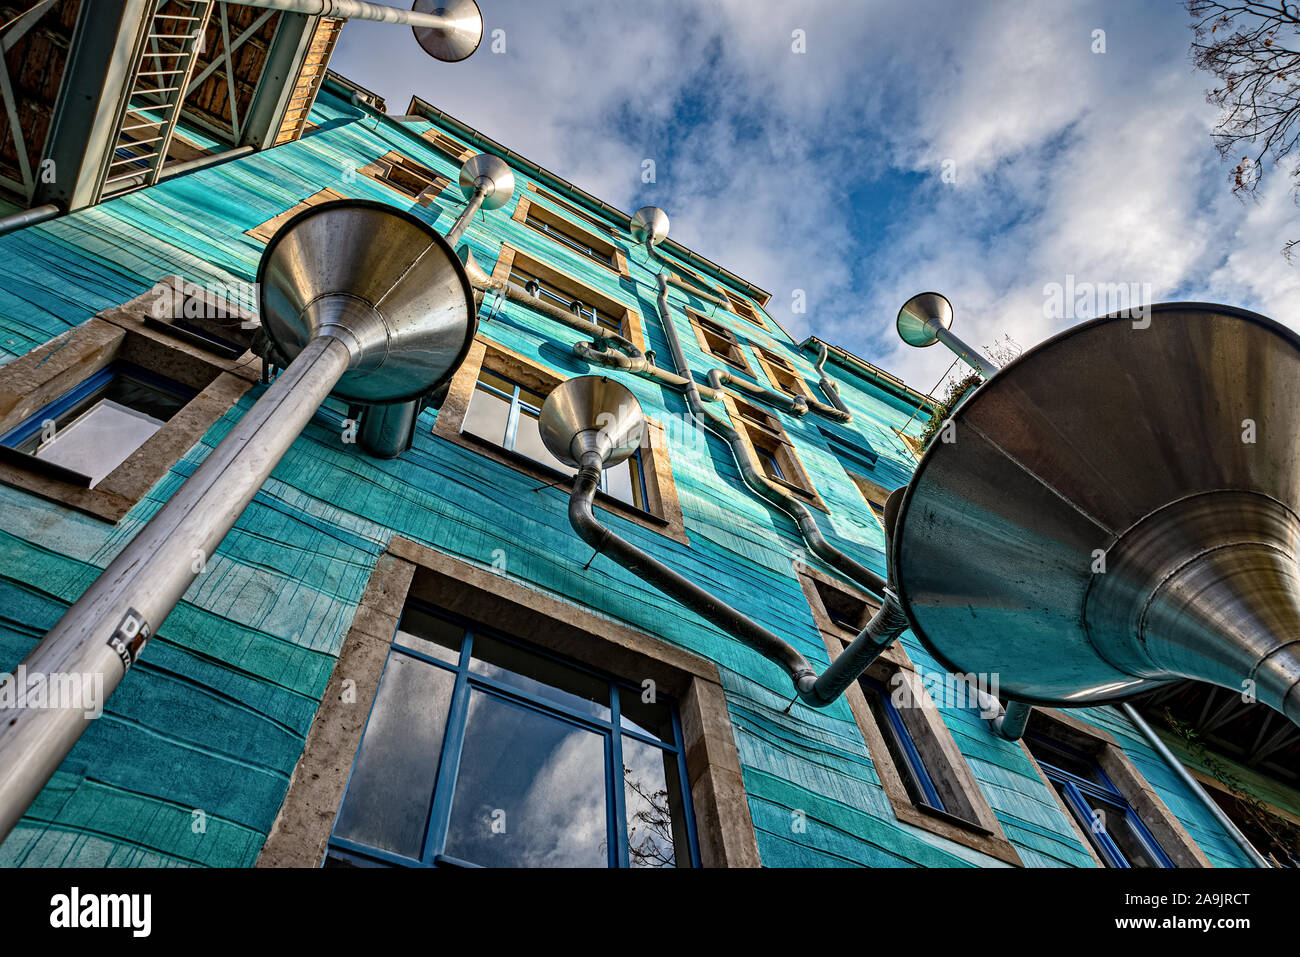 Blau lackierte Hausfassade im Innenhof der Elemente mit miteinander verbundenen Regenrohren, die in der Kunsthofpassage in Dresden 'Musik' machen Stockfoto